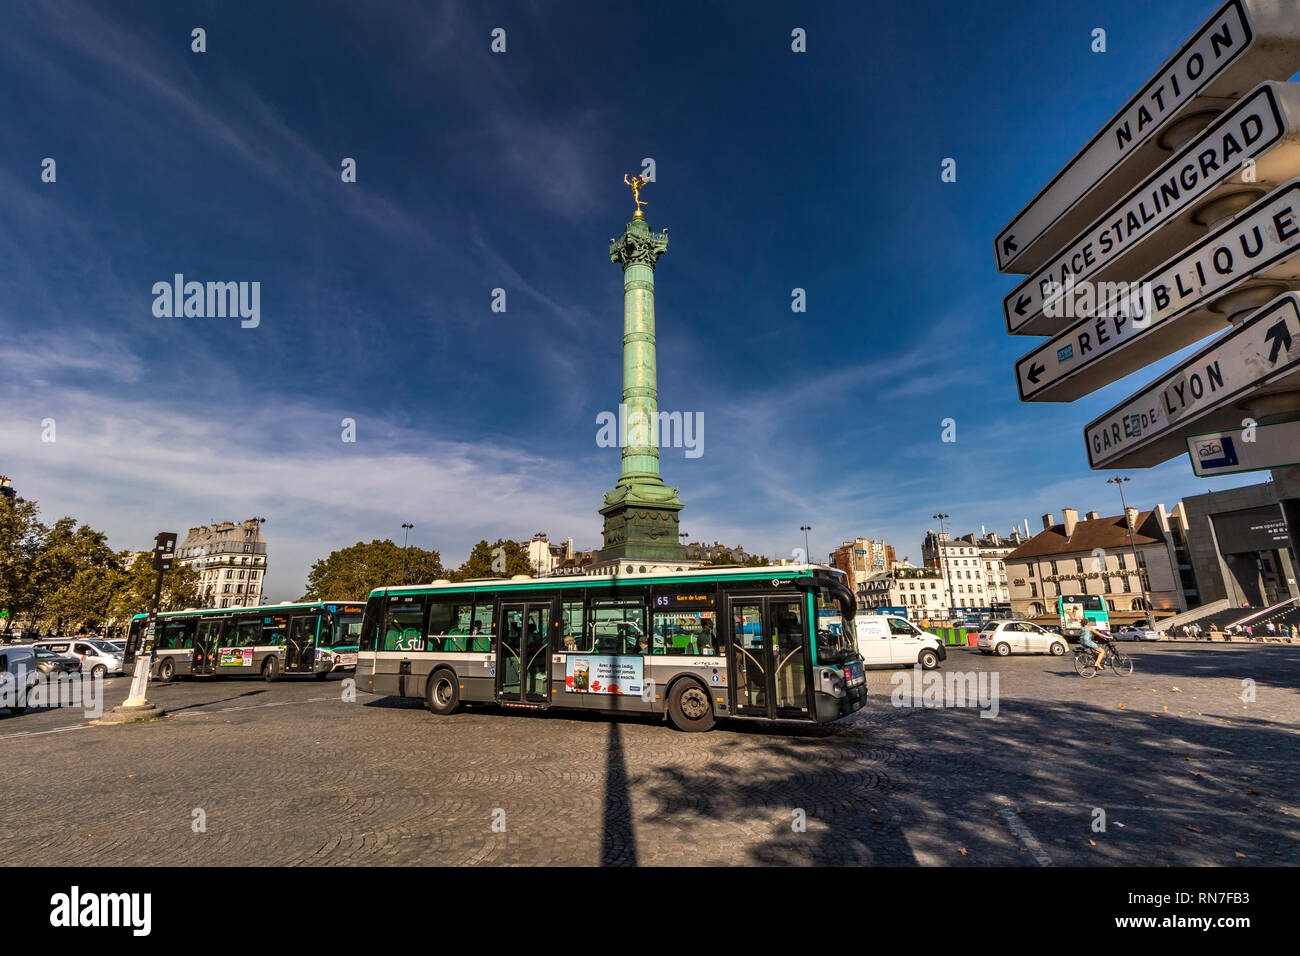 Der Juli Spalte in der Mitte der Place de la Bastille, einem berühmten historischen Platz in Paris, wo die Bastille stand. Stockfoto